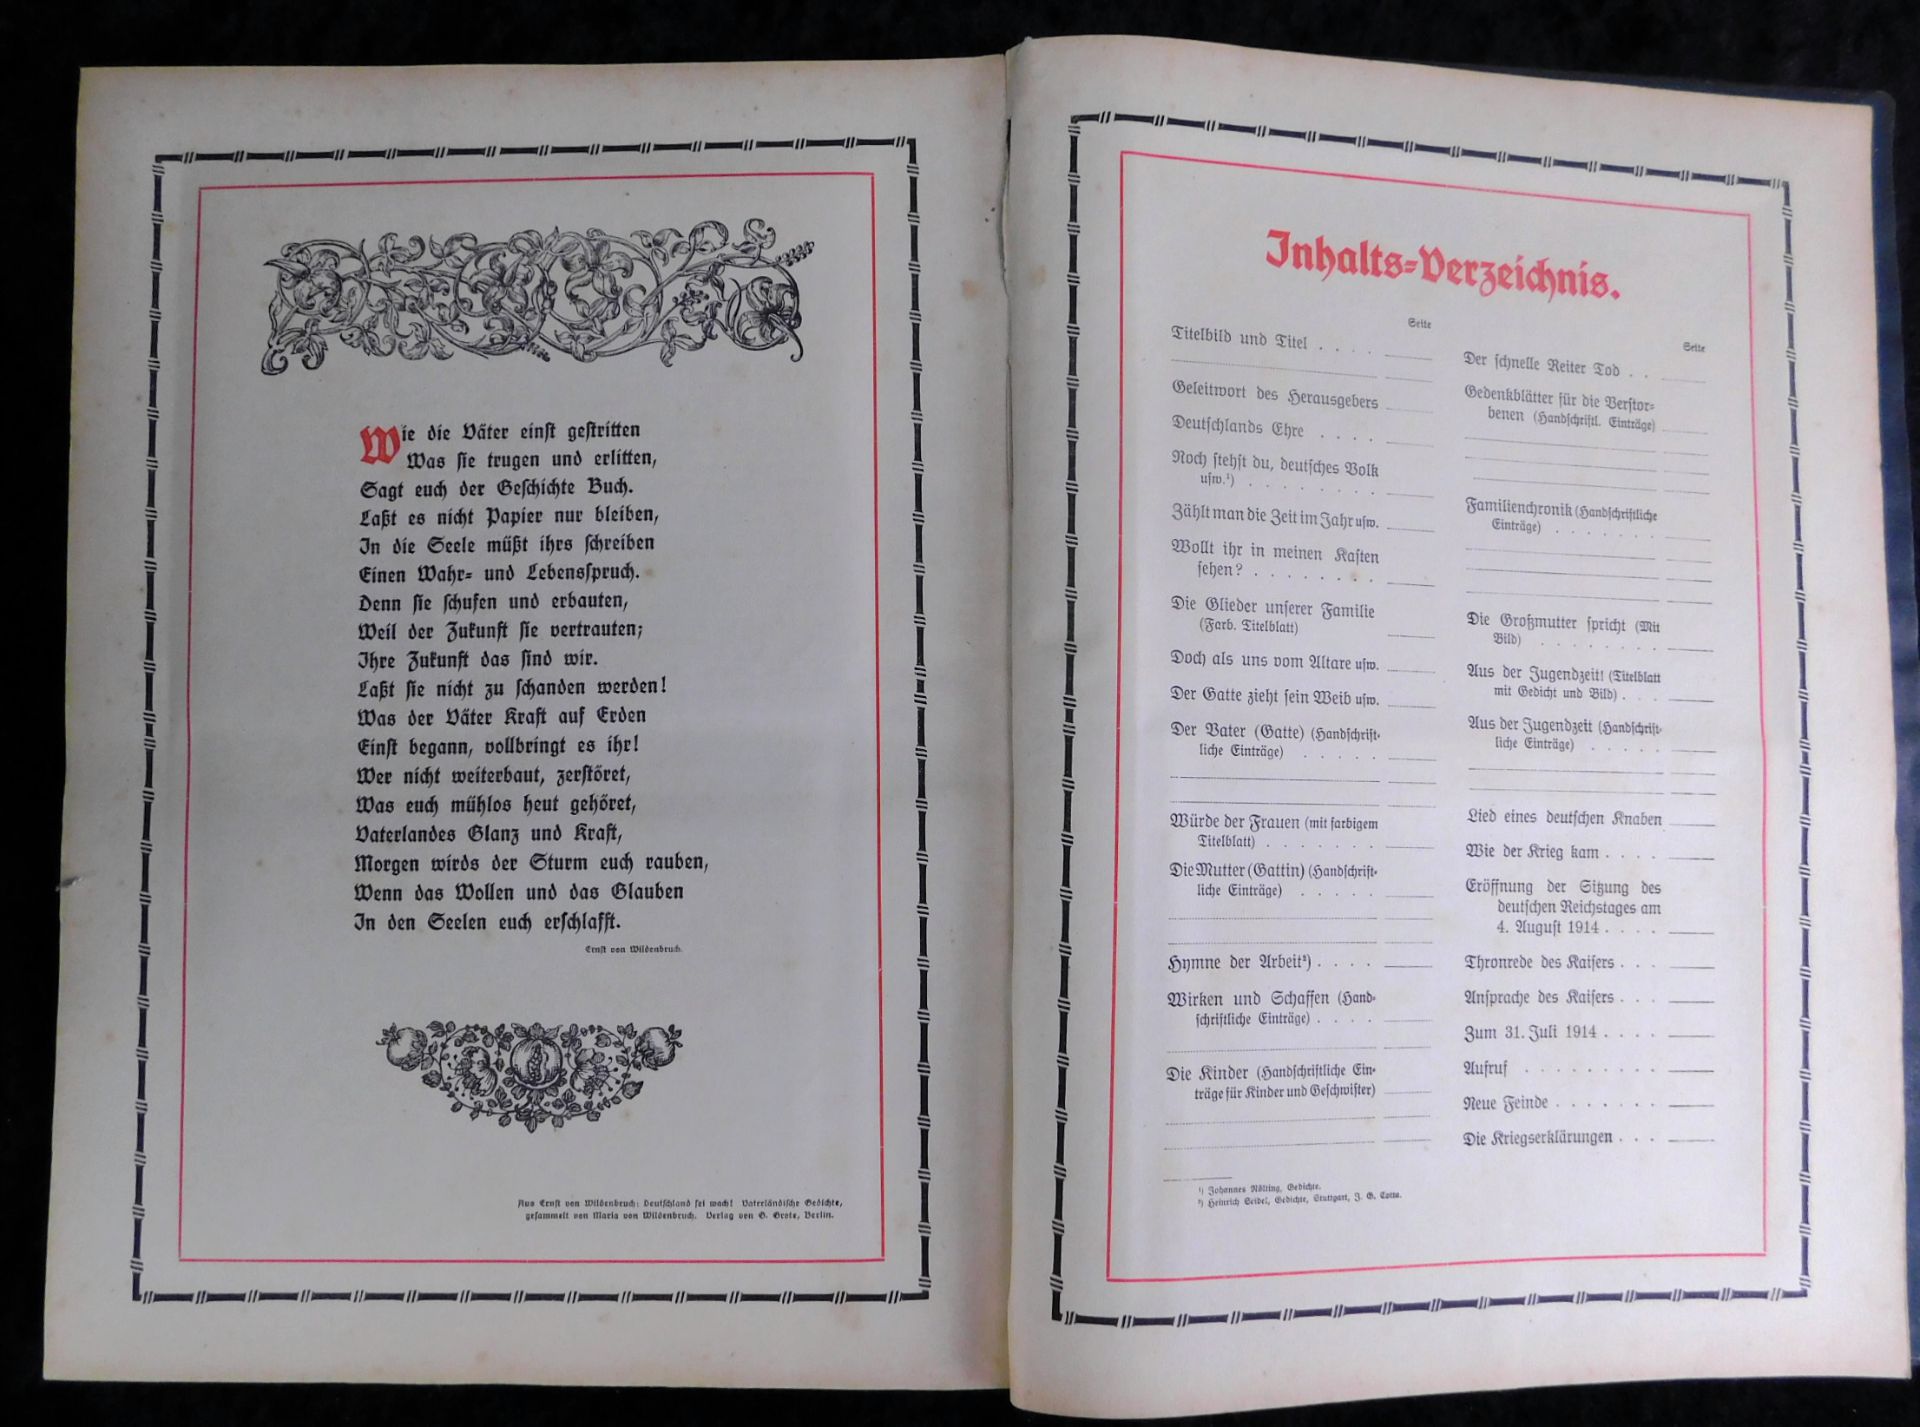 Großes Ehrenbuch 1914, Familienstammbuch, Verlag Joh.E.Hubens, Diessen/München - Image 6 of 7